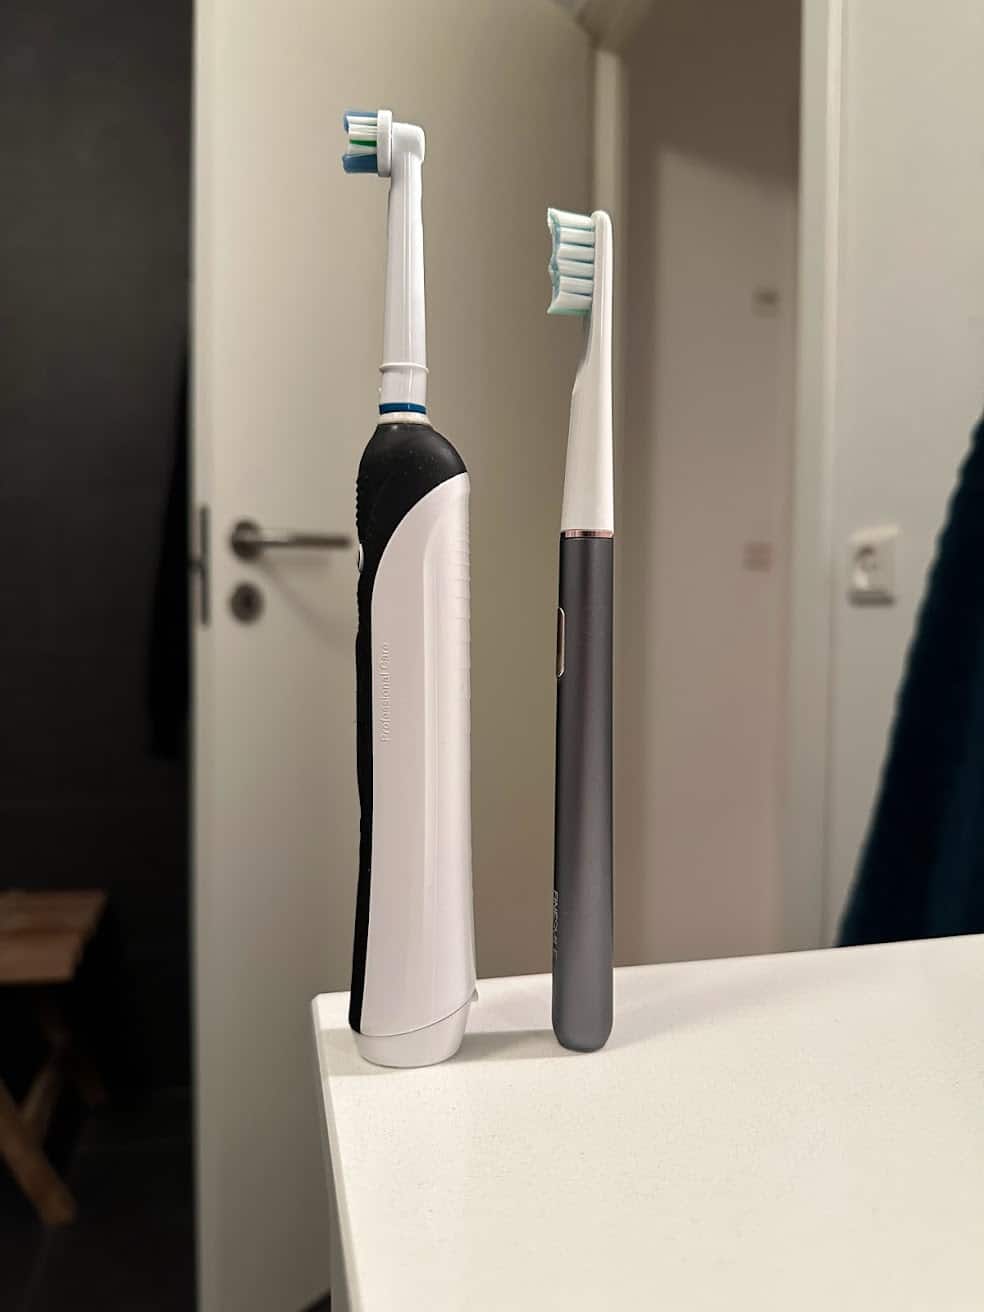 test af finesmile iq tandbørsten eltandbørste tandbørste eltandbørster virker den erfaring med anmeldelse af larmer støjniveau